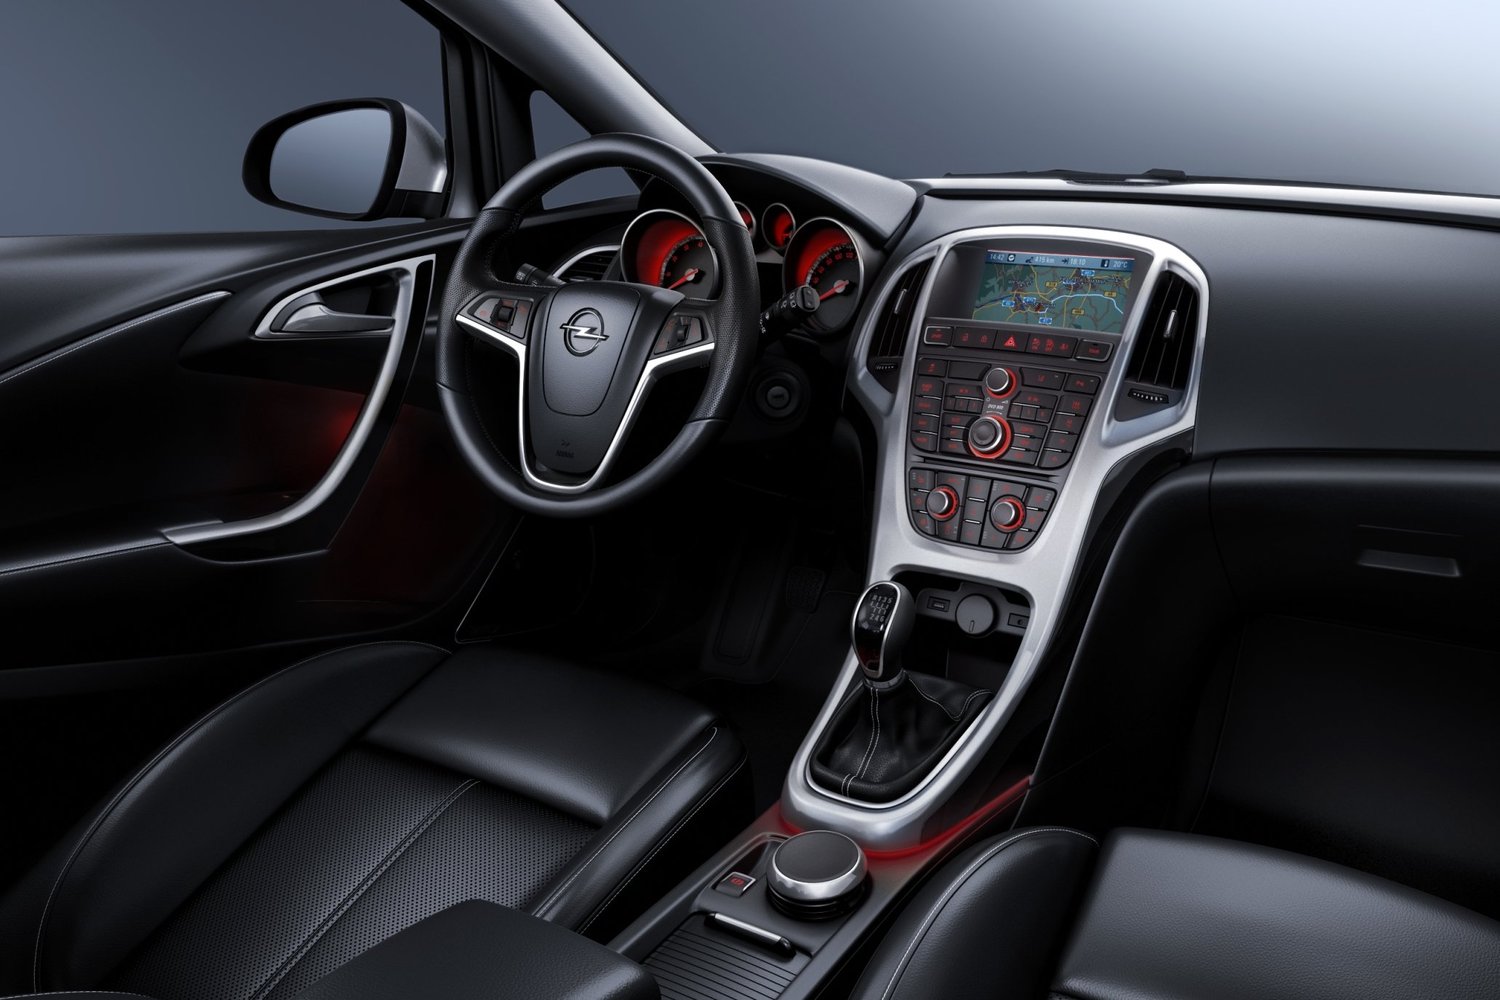 хэтчбек 5 дв. Opel Astra 2010 - 2012г выпуска модификация 1.2 MT (95 л.с.)